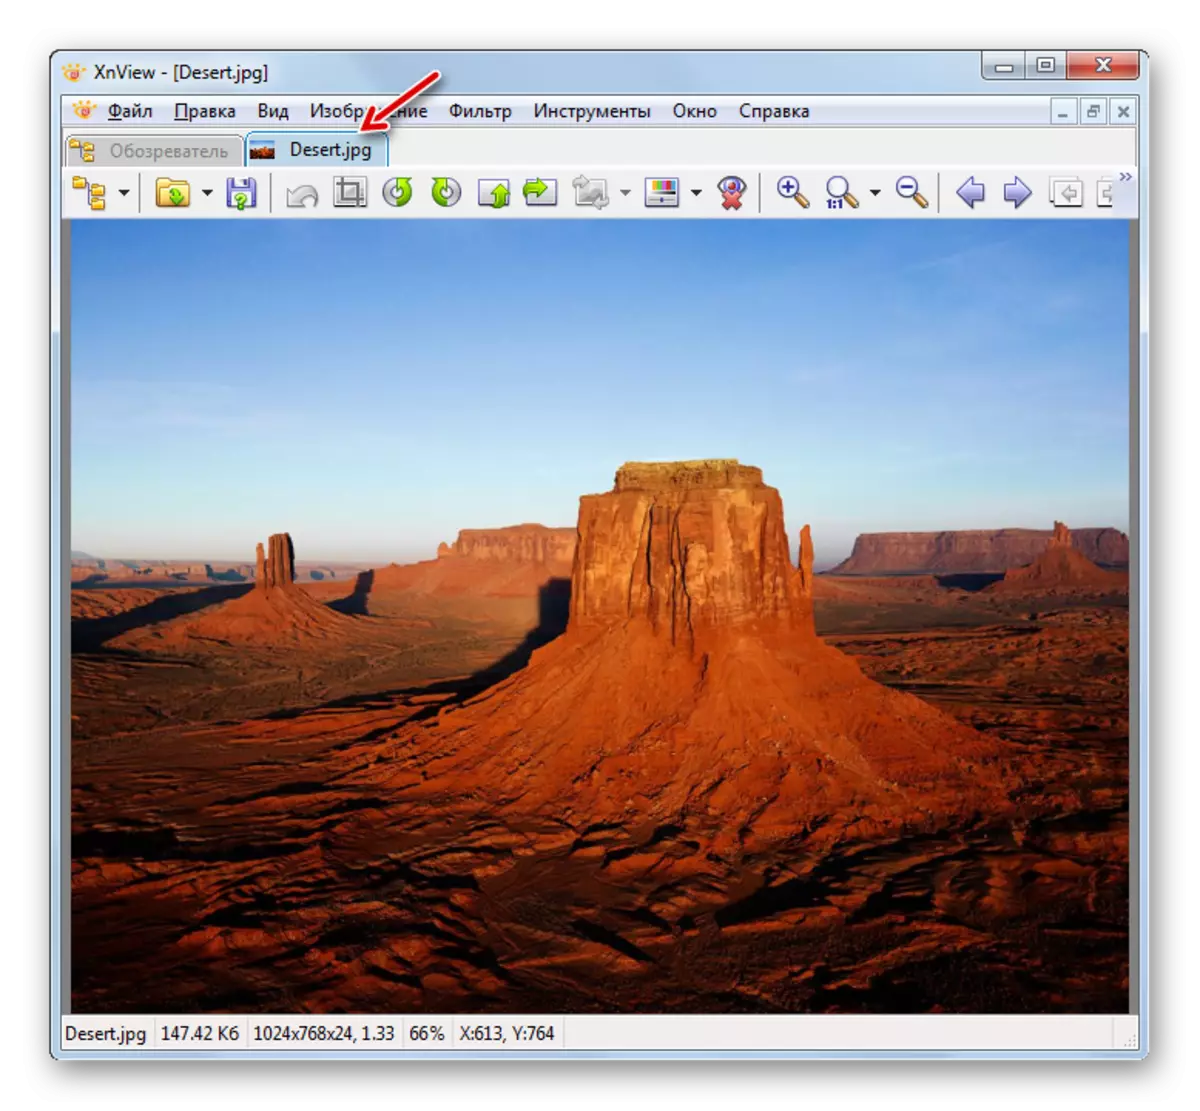 Imagen guardada en formato JPG en xnview